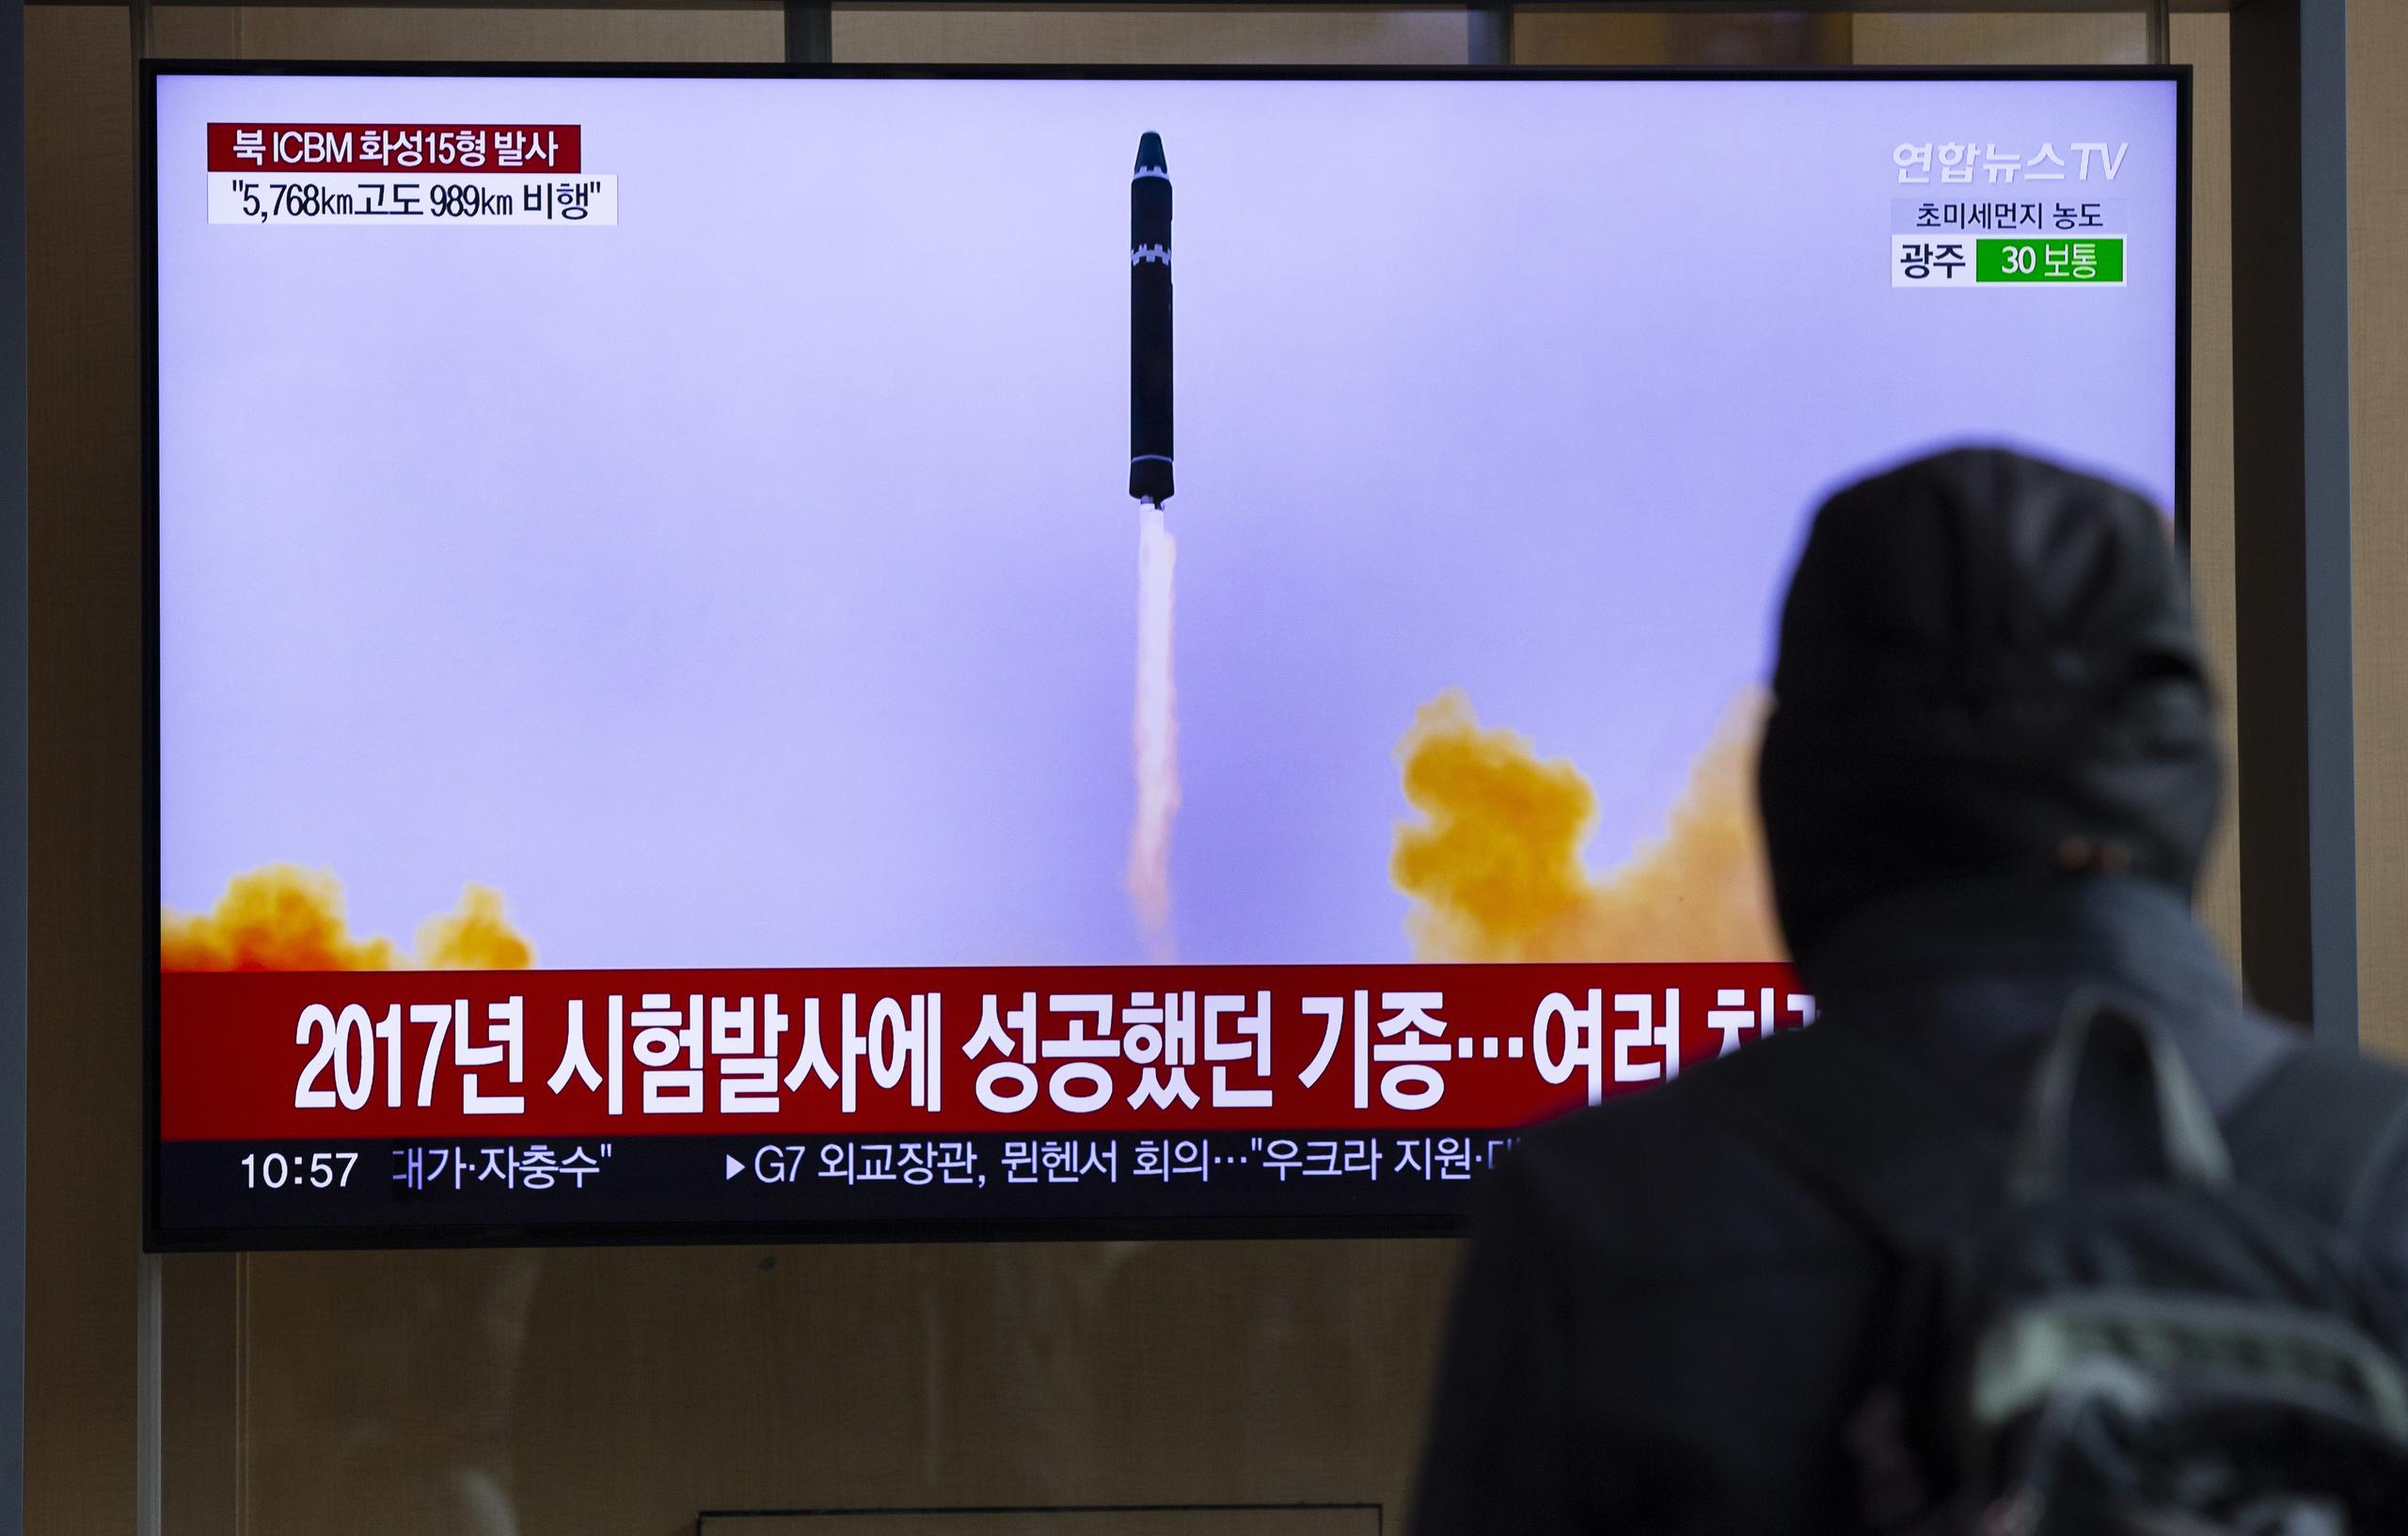 La semana pasada, Corea del Norte probó lo que dijo que era un avanzado misil de largo alcance y amenazó con derribar aviones de reconocimiento militar.